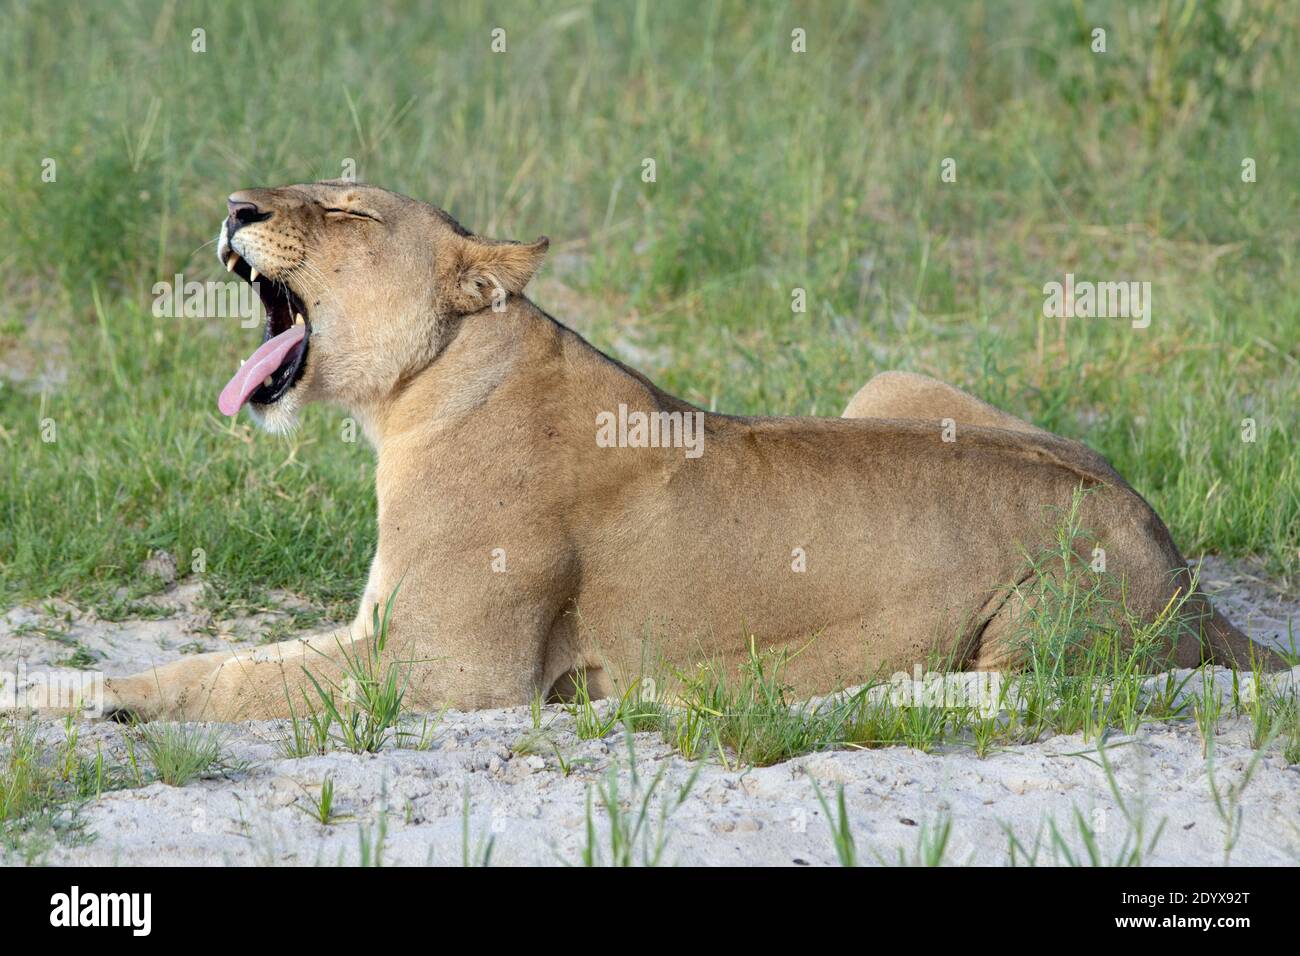 Afrikanische Löwin (Panthera lio). Liegend in der offenen, Kopf angehoben, gähnend offenbart einen weit geöffneten Mund und Kiefer Eckzähne und eine raspende Zunge. S Stockfoto